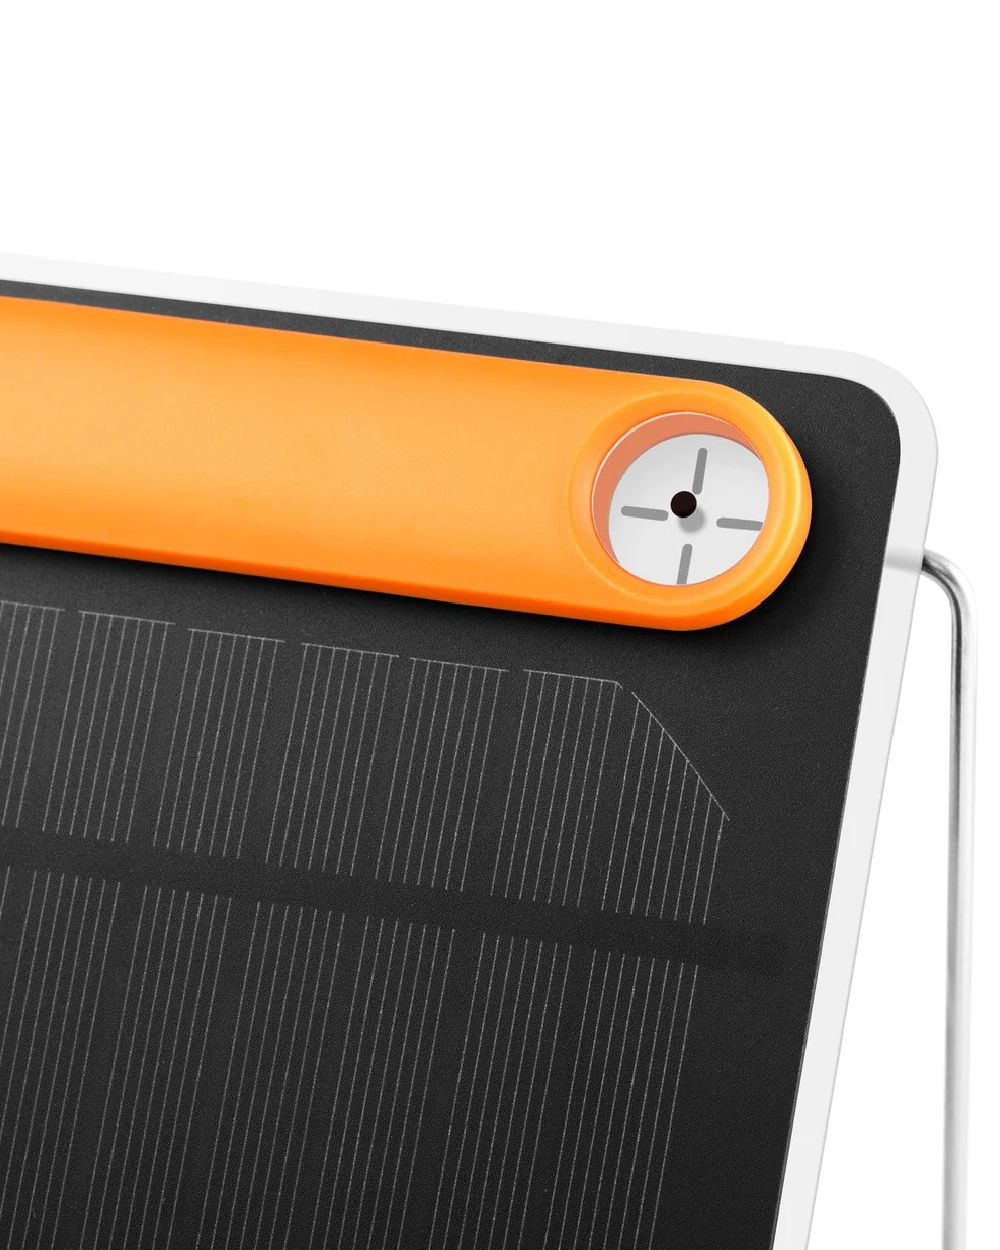 BioLite Lightweight SolarPanel 5+